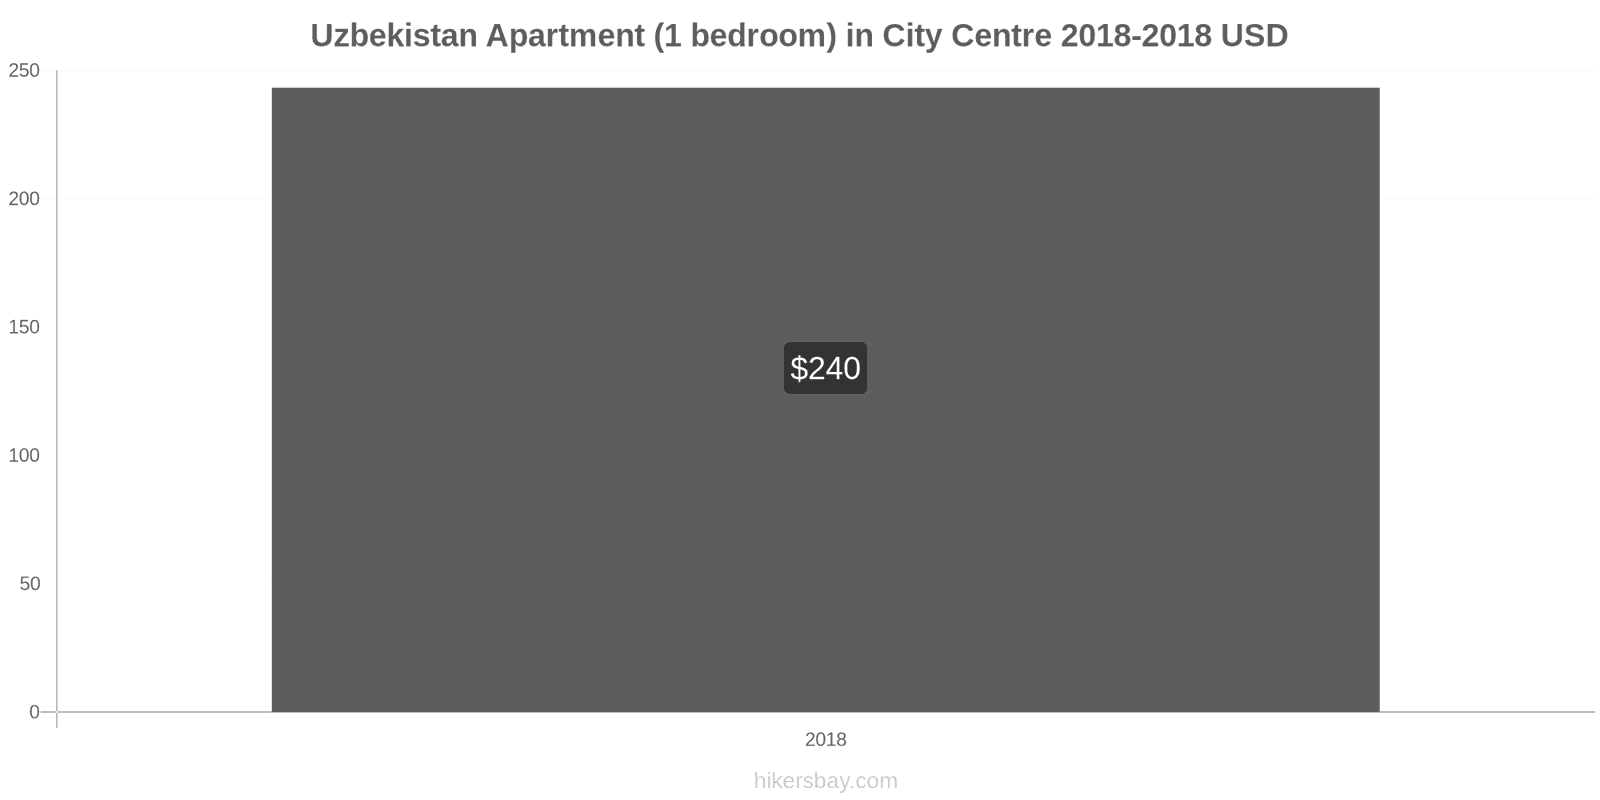 Uzbekistan price changes Apartment (1 bedroom) in city centre hikersbay.com